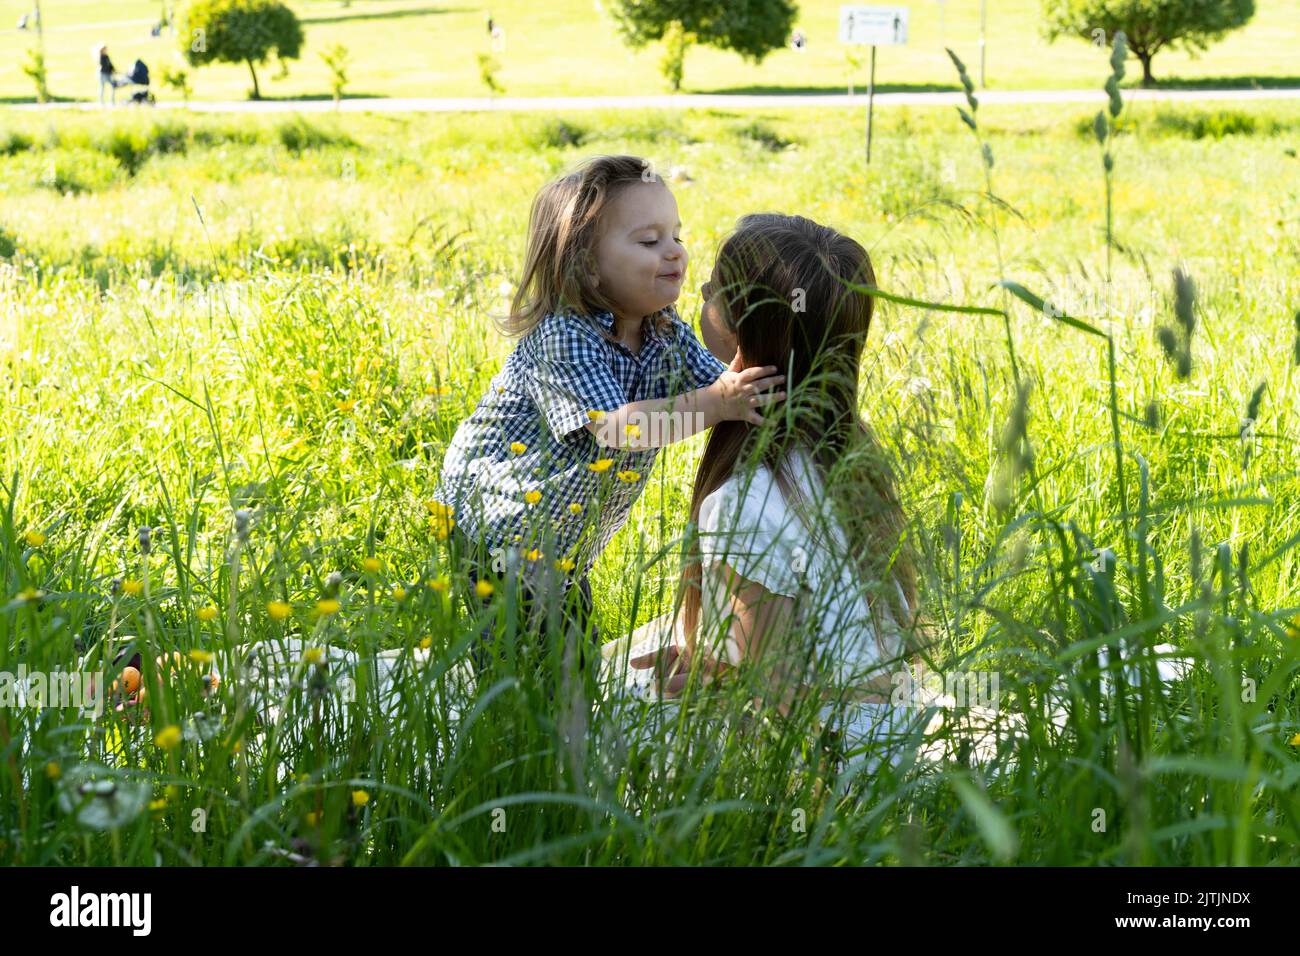 Fratello e sorella stanno giocando iand baciando il parco fra l'erba verde. I bambini abbracciano strettamente. Picnic fuori città. Infanzia. Relazioni. Foto Stock